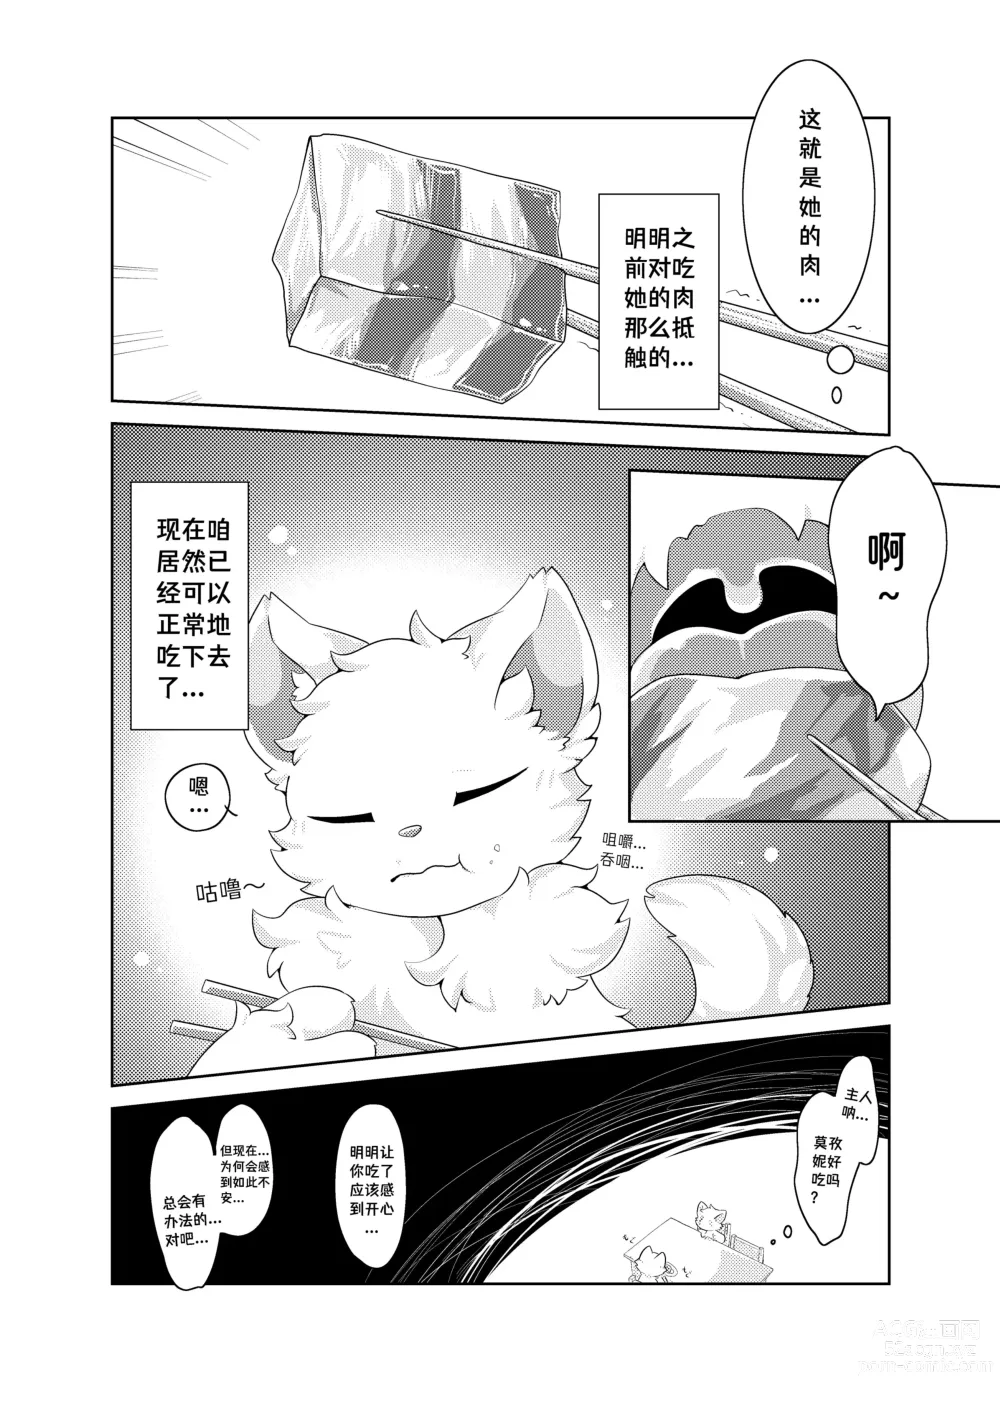 Page 35 of doujinshi Bokuyo motsuni no oishii seikatu.R-18G